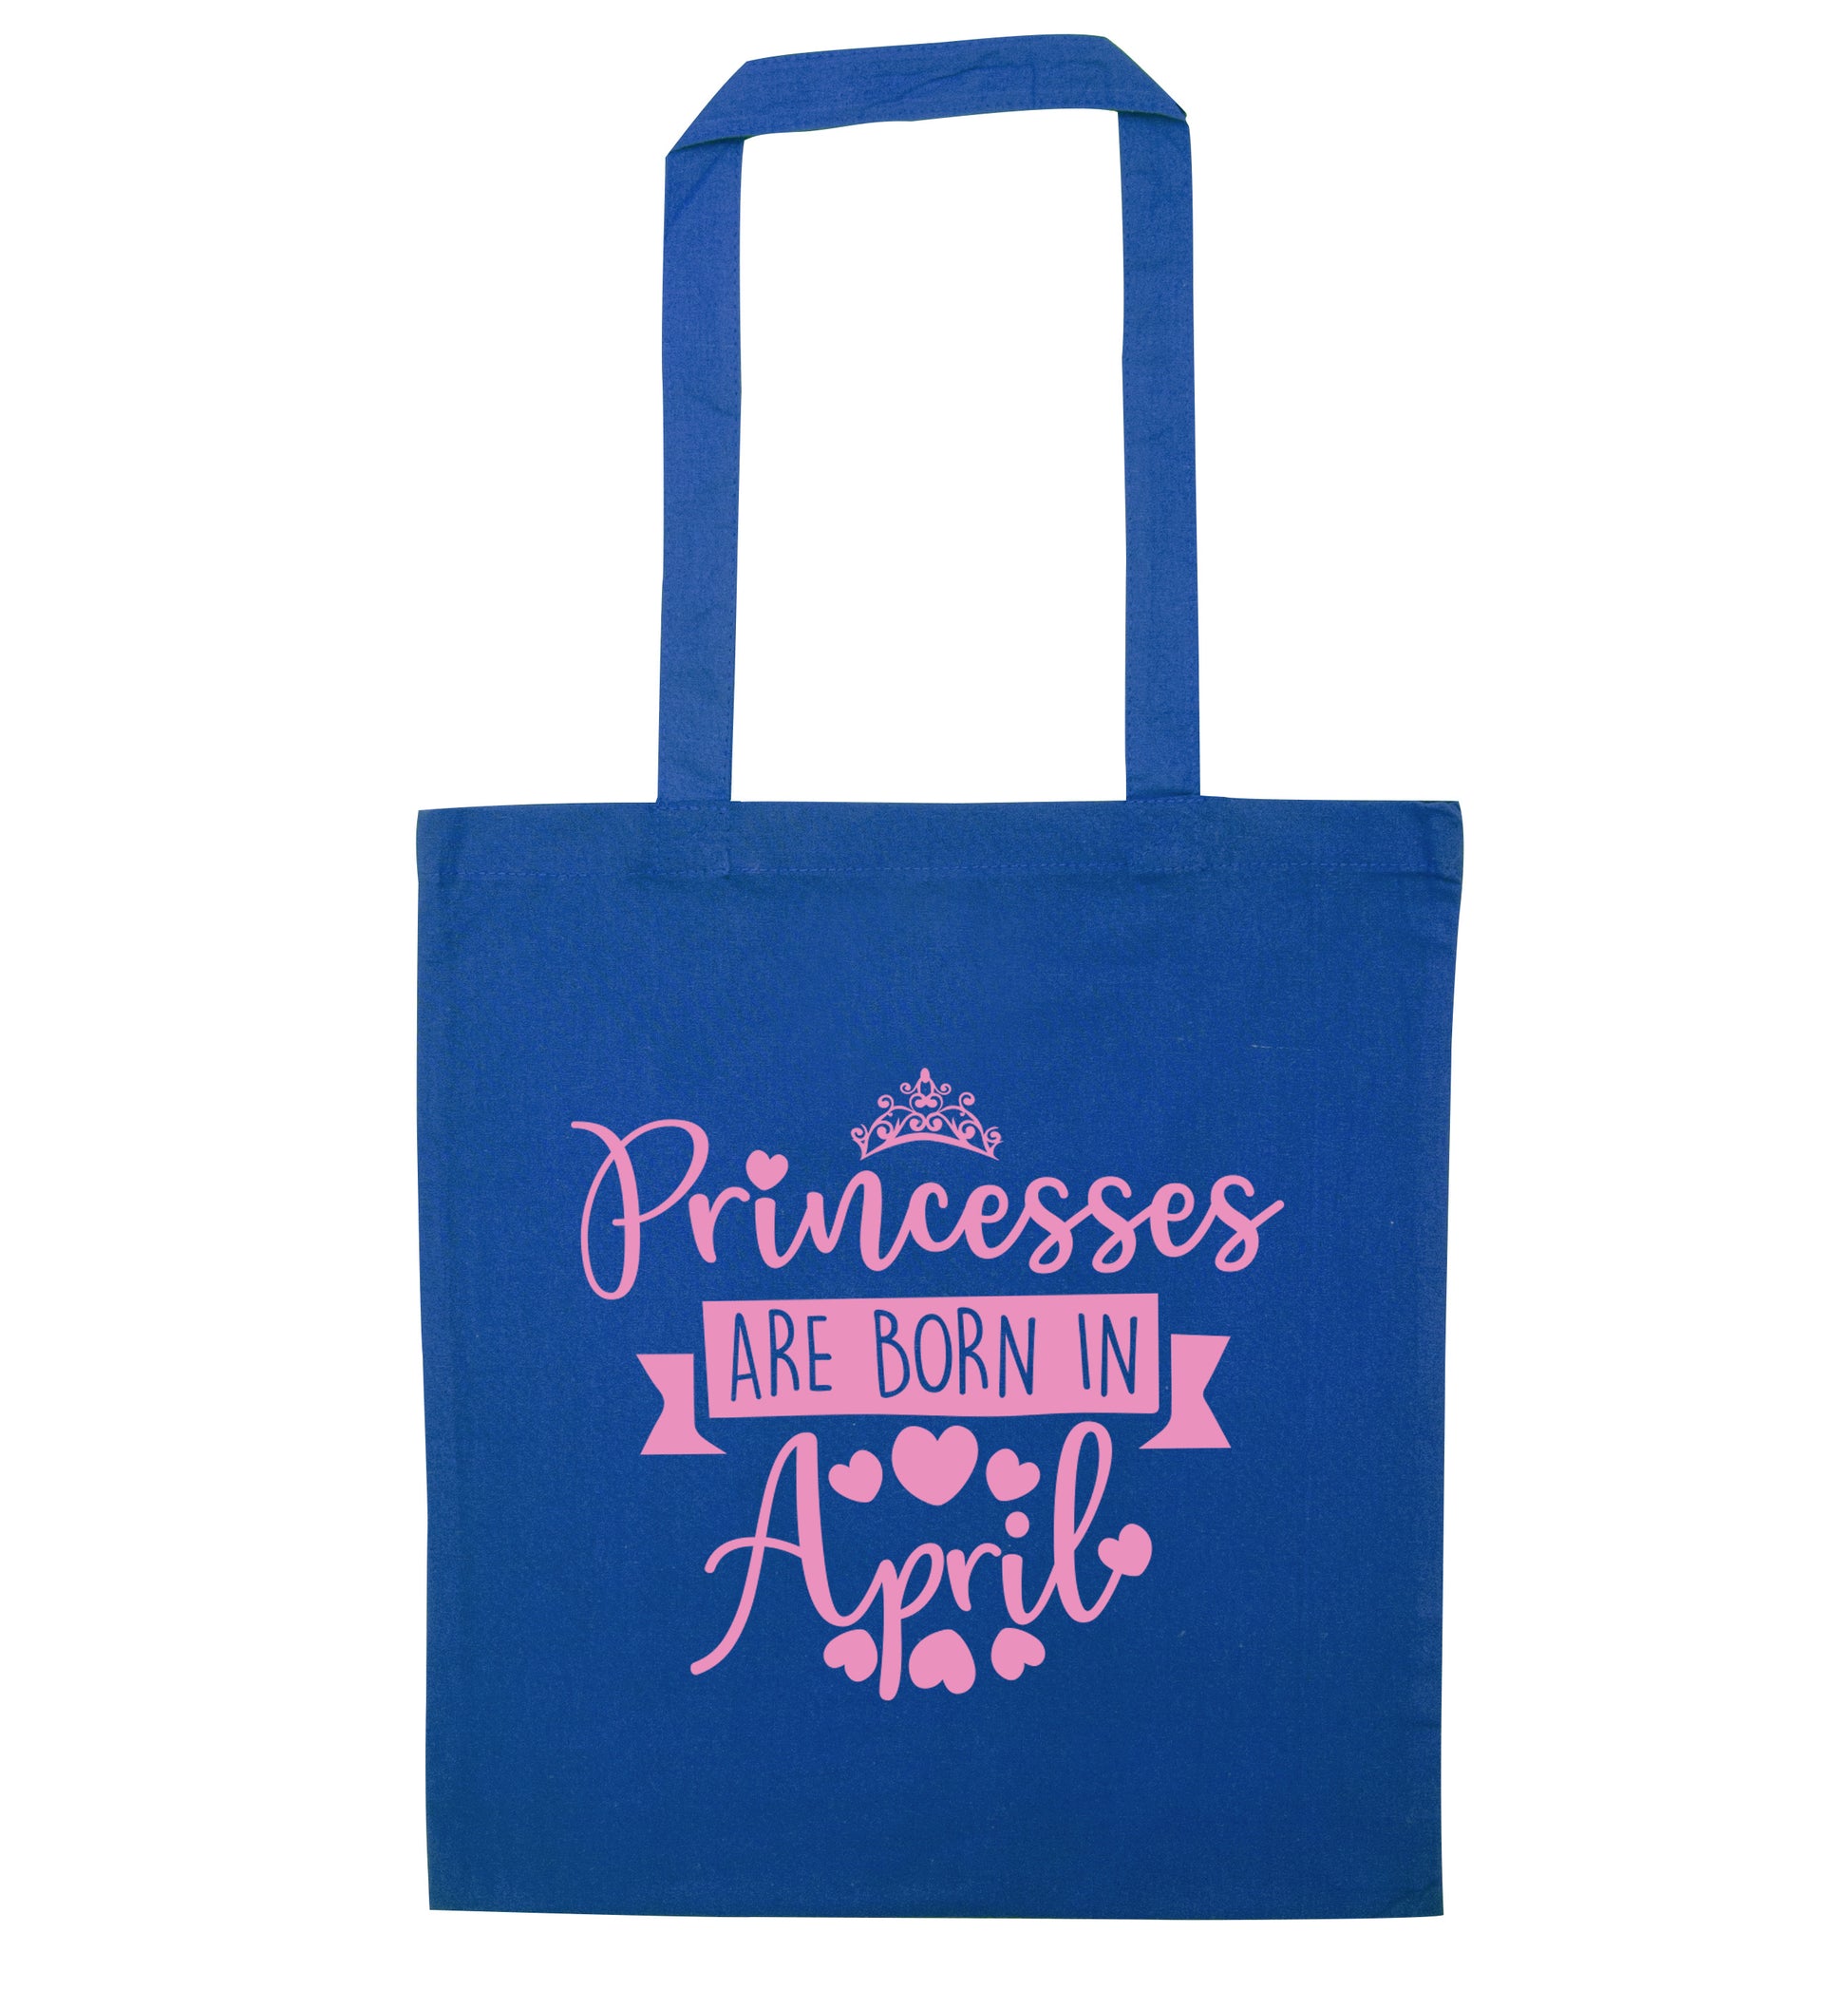 Princesses are born in April blue tote bag